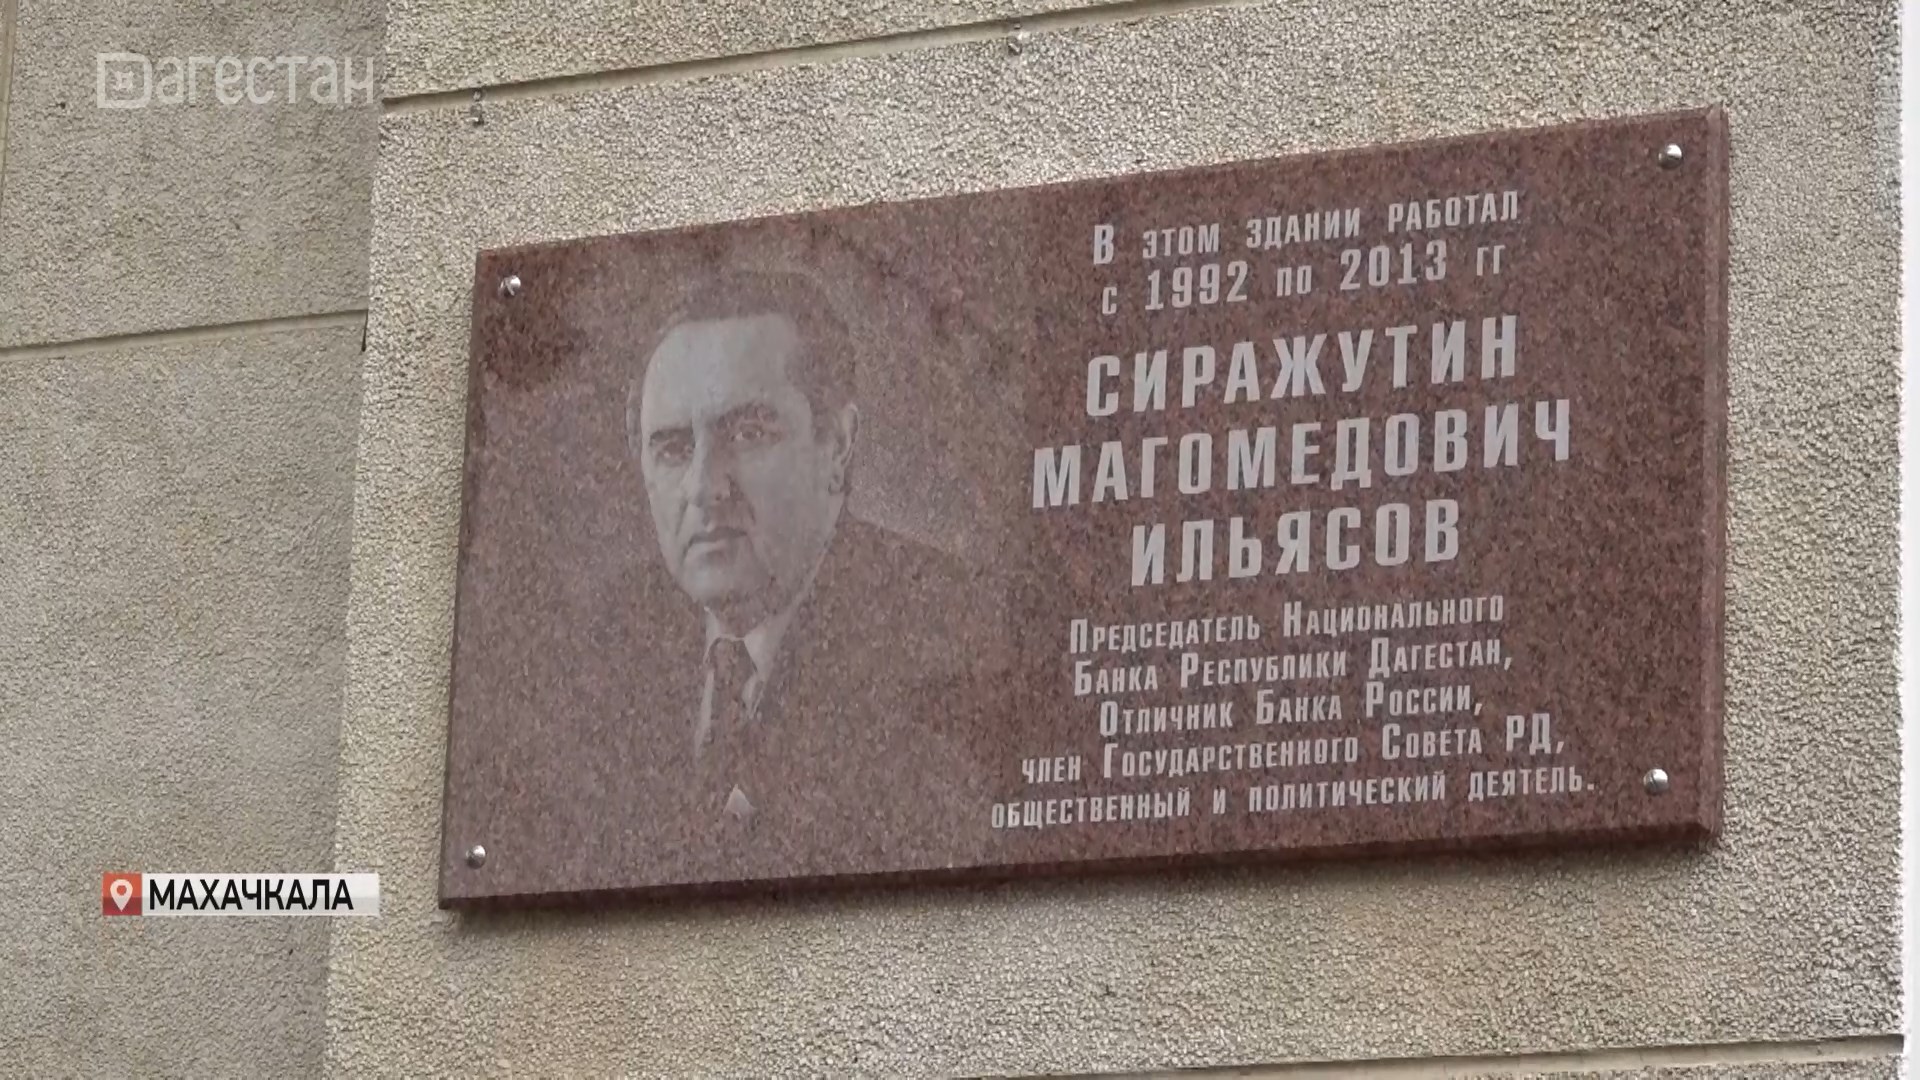 В Махачкале открыли мемориальную доску Сиражутину Ильясову